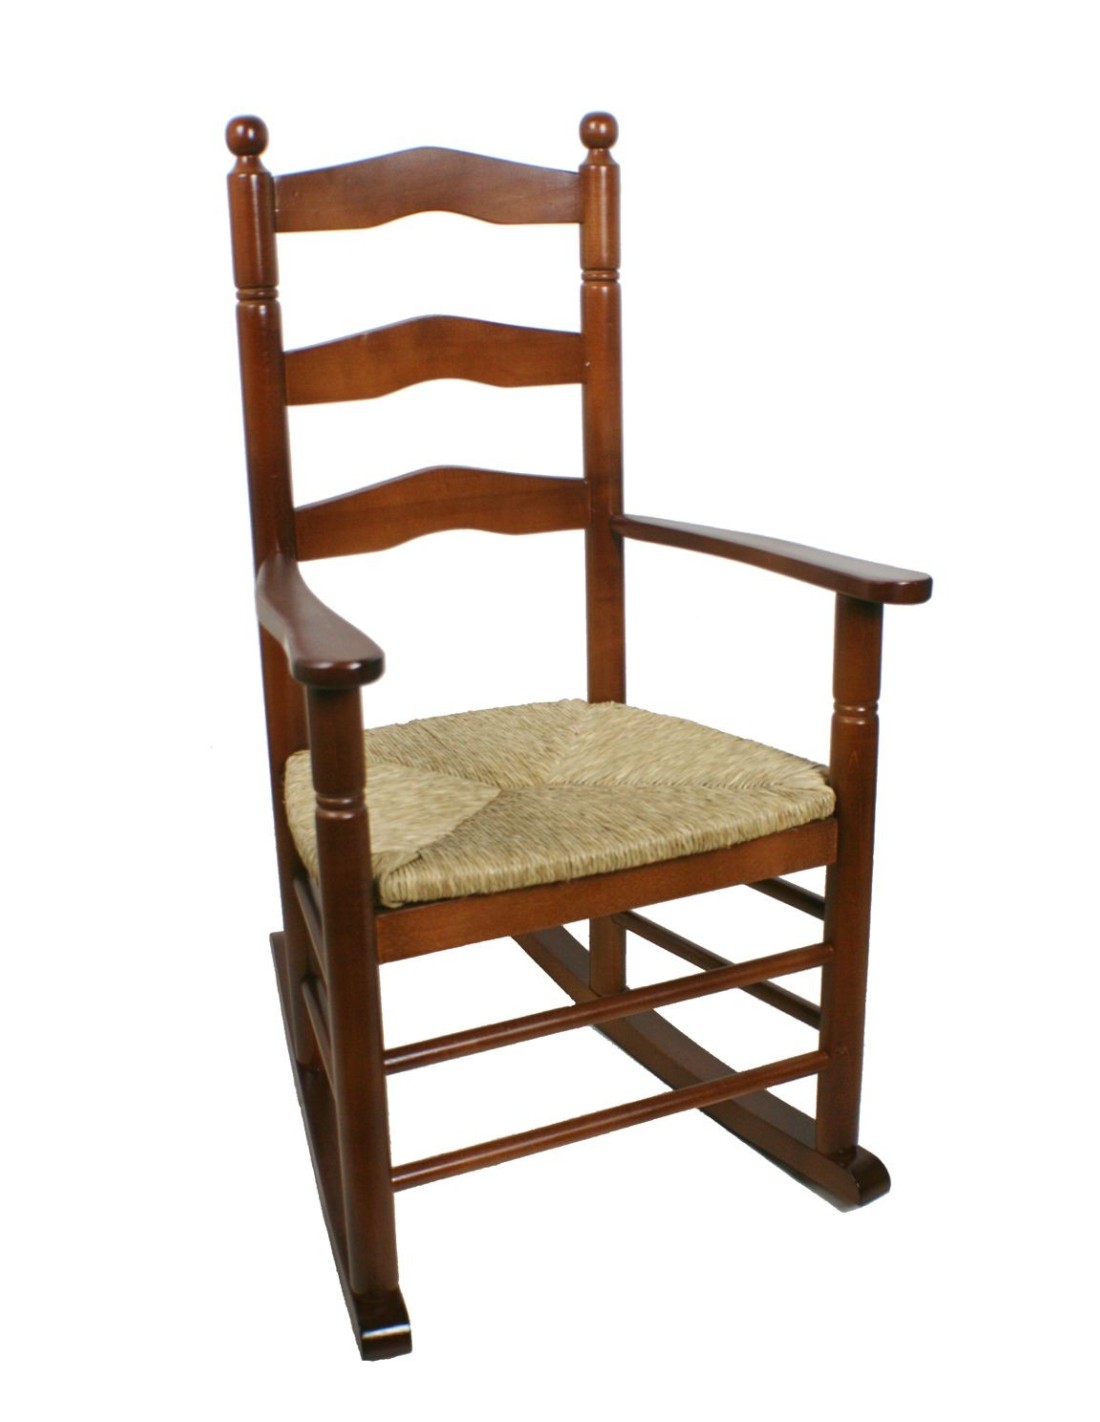 Mecedora balancín de madera con asiento de anea mecedora de la abuela para descanso con reposa-brazos.